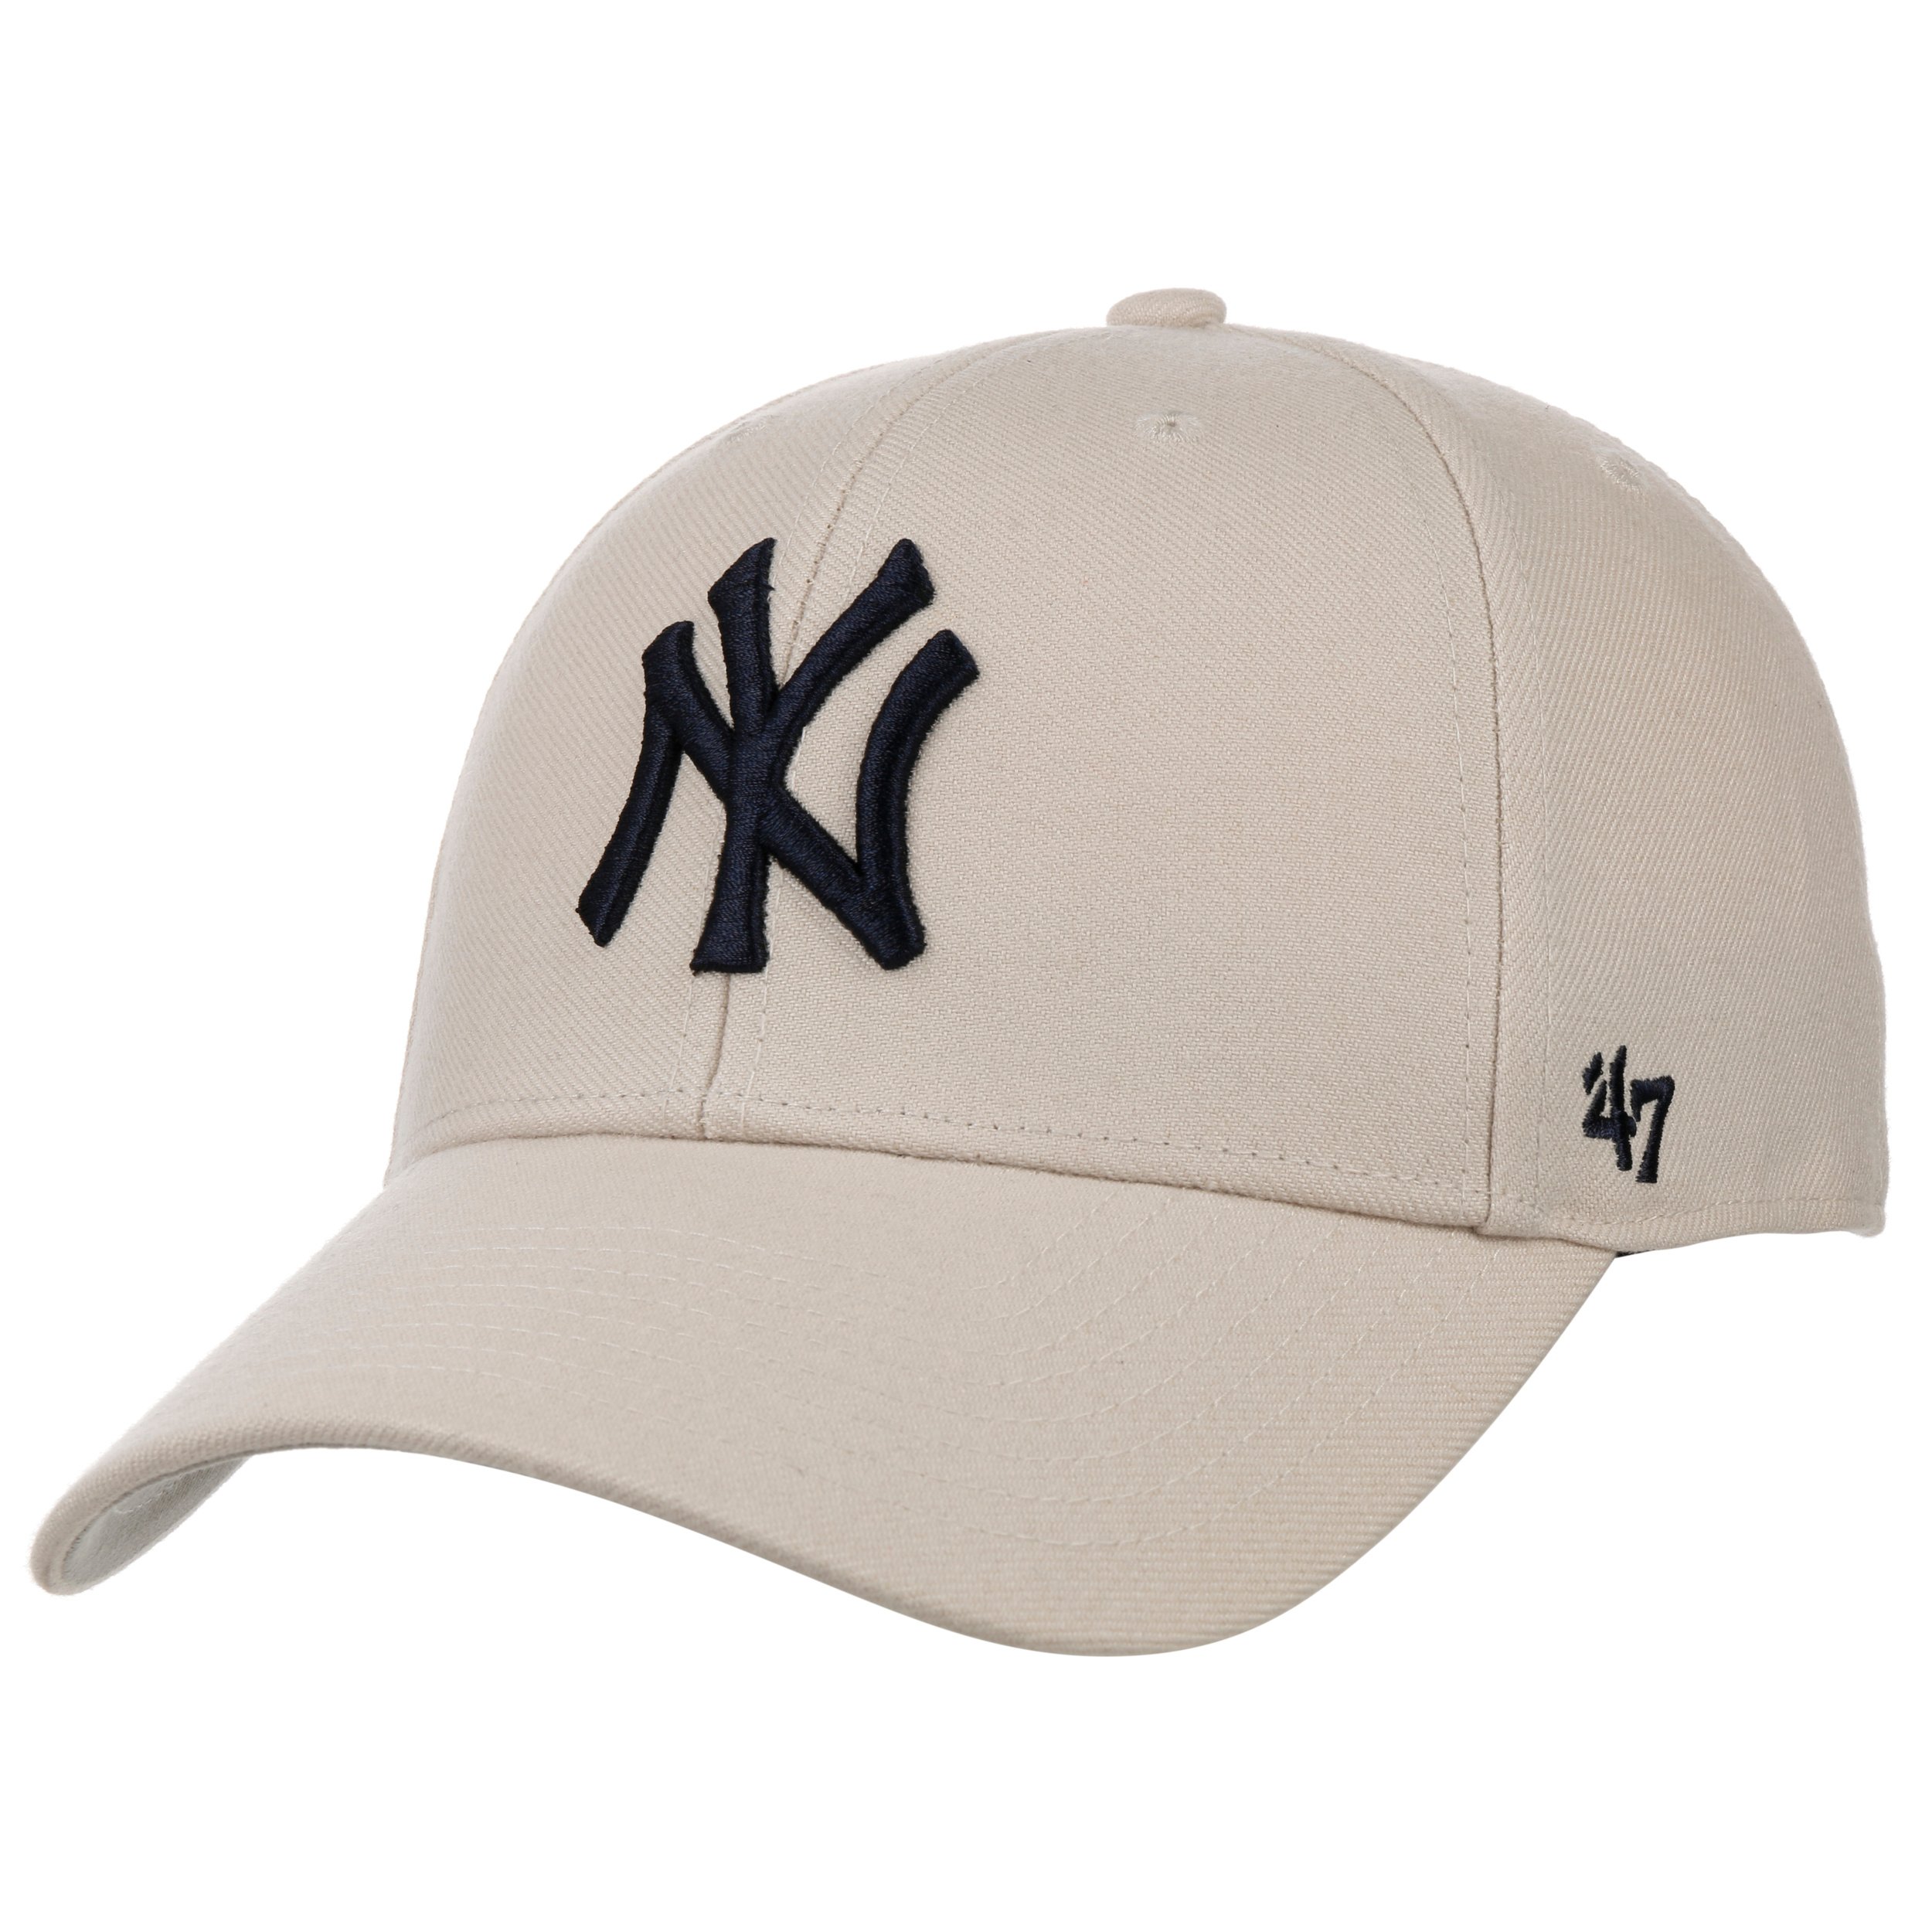 MVP Yankees Bone Cap by 47 Brand - 32,95 €